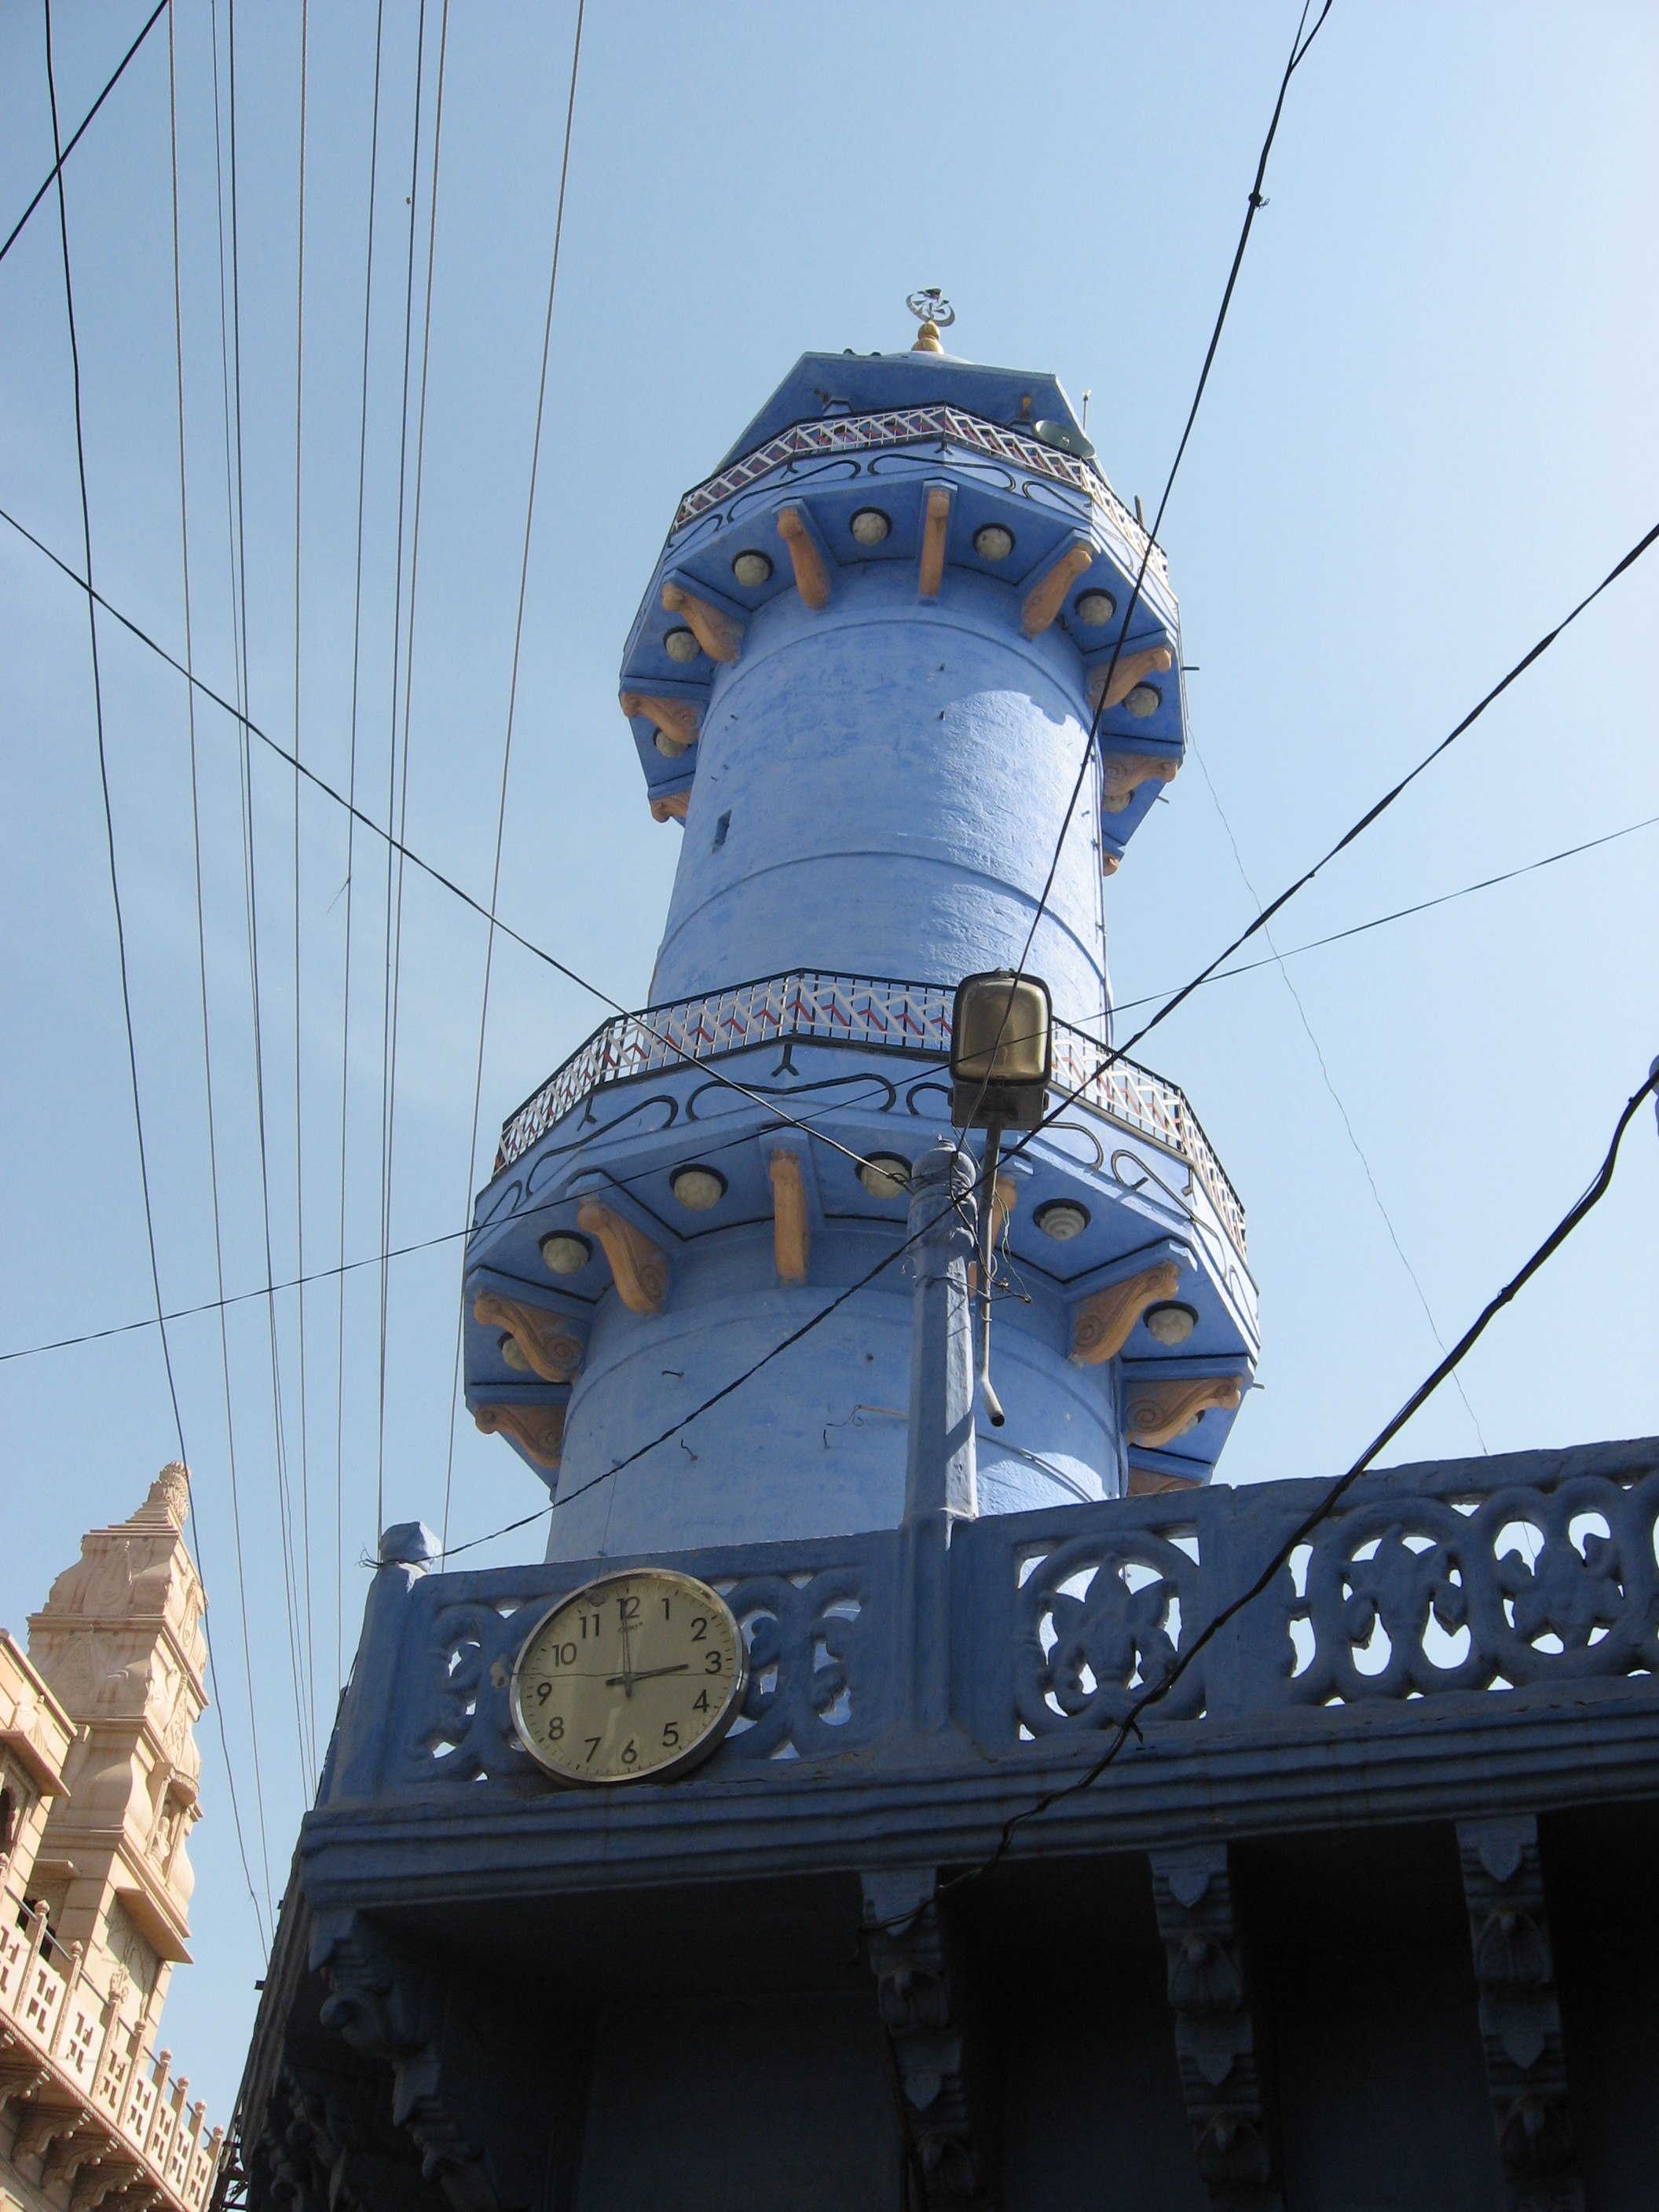 Jodhpur city